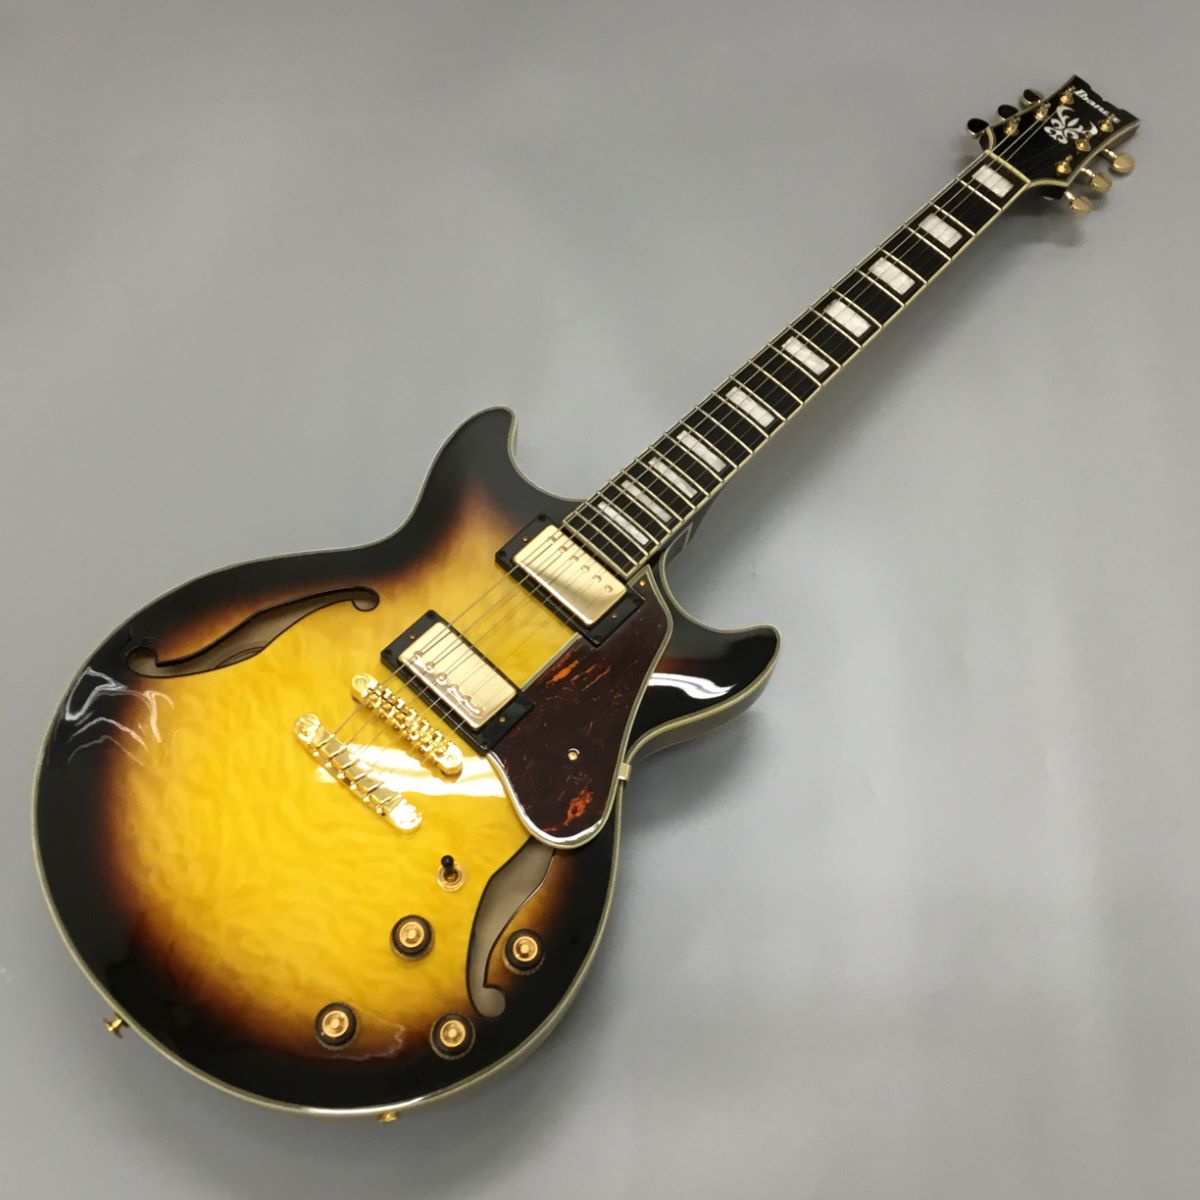 Ibanez AM93QM-AYS Antique Yellow Sunburst セミアコギター【現物写真